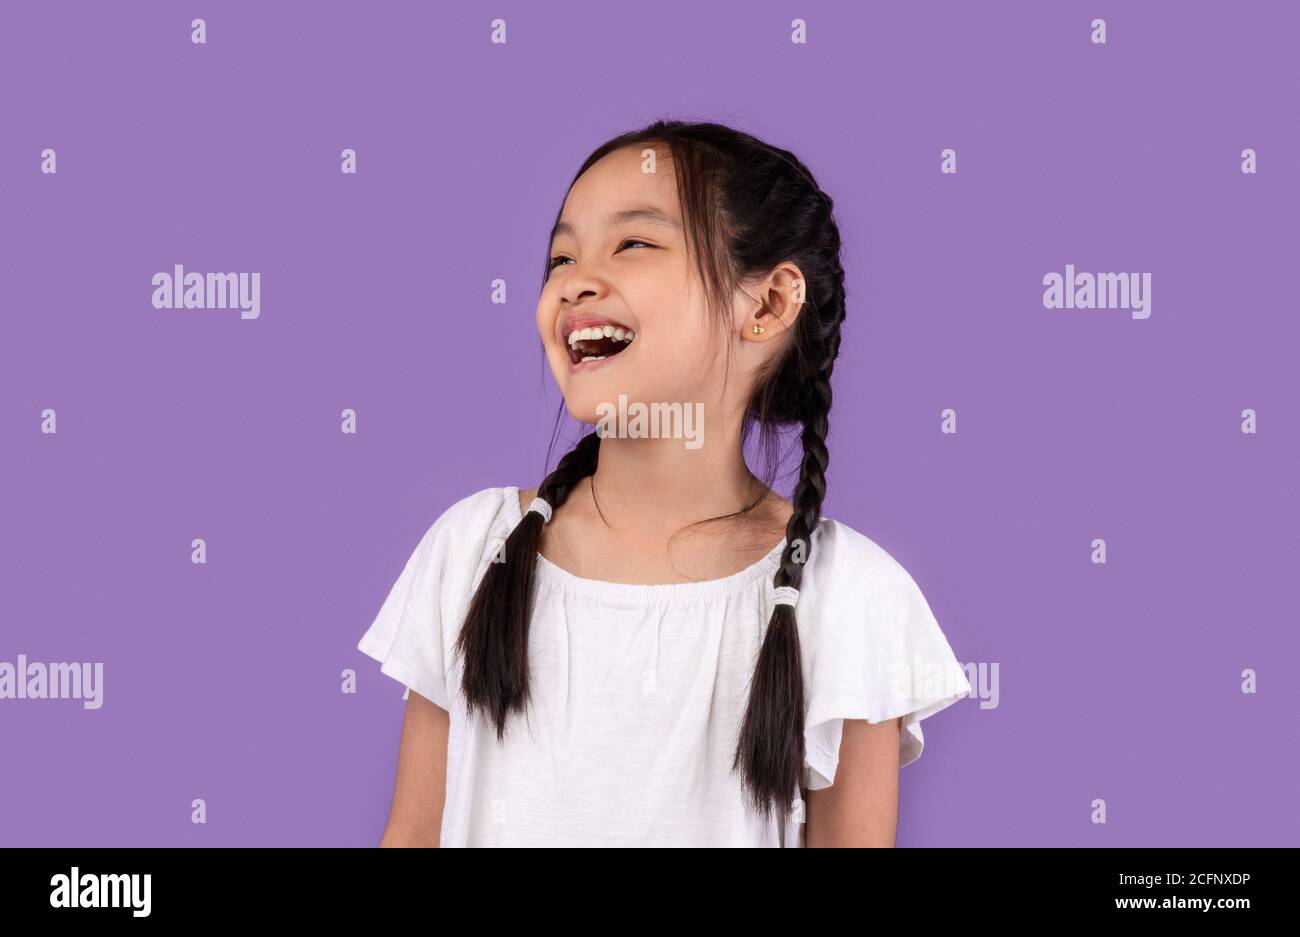 Joyeuse petite fille asiatique riant posant sur fond violet Banque D'Images